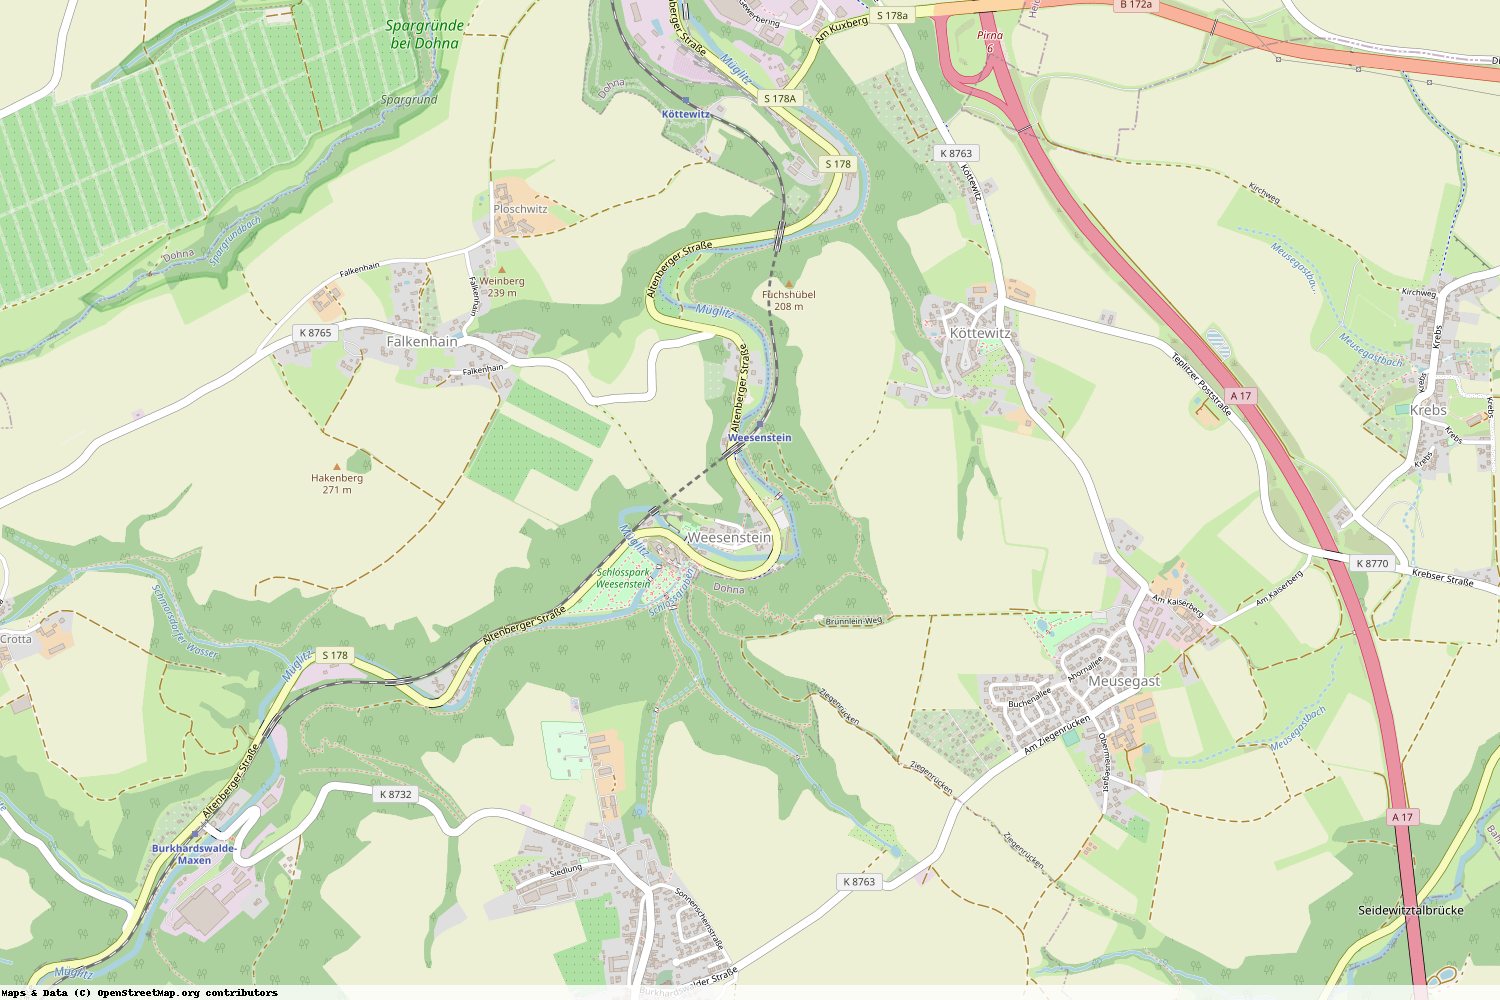 Ist gerade Stromausfall in Sachsen - Sächsische Schweiz-Osterzgebirge - Müglitztal?